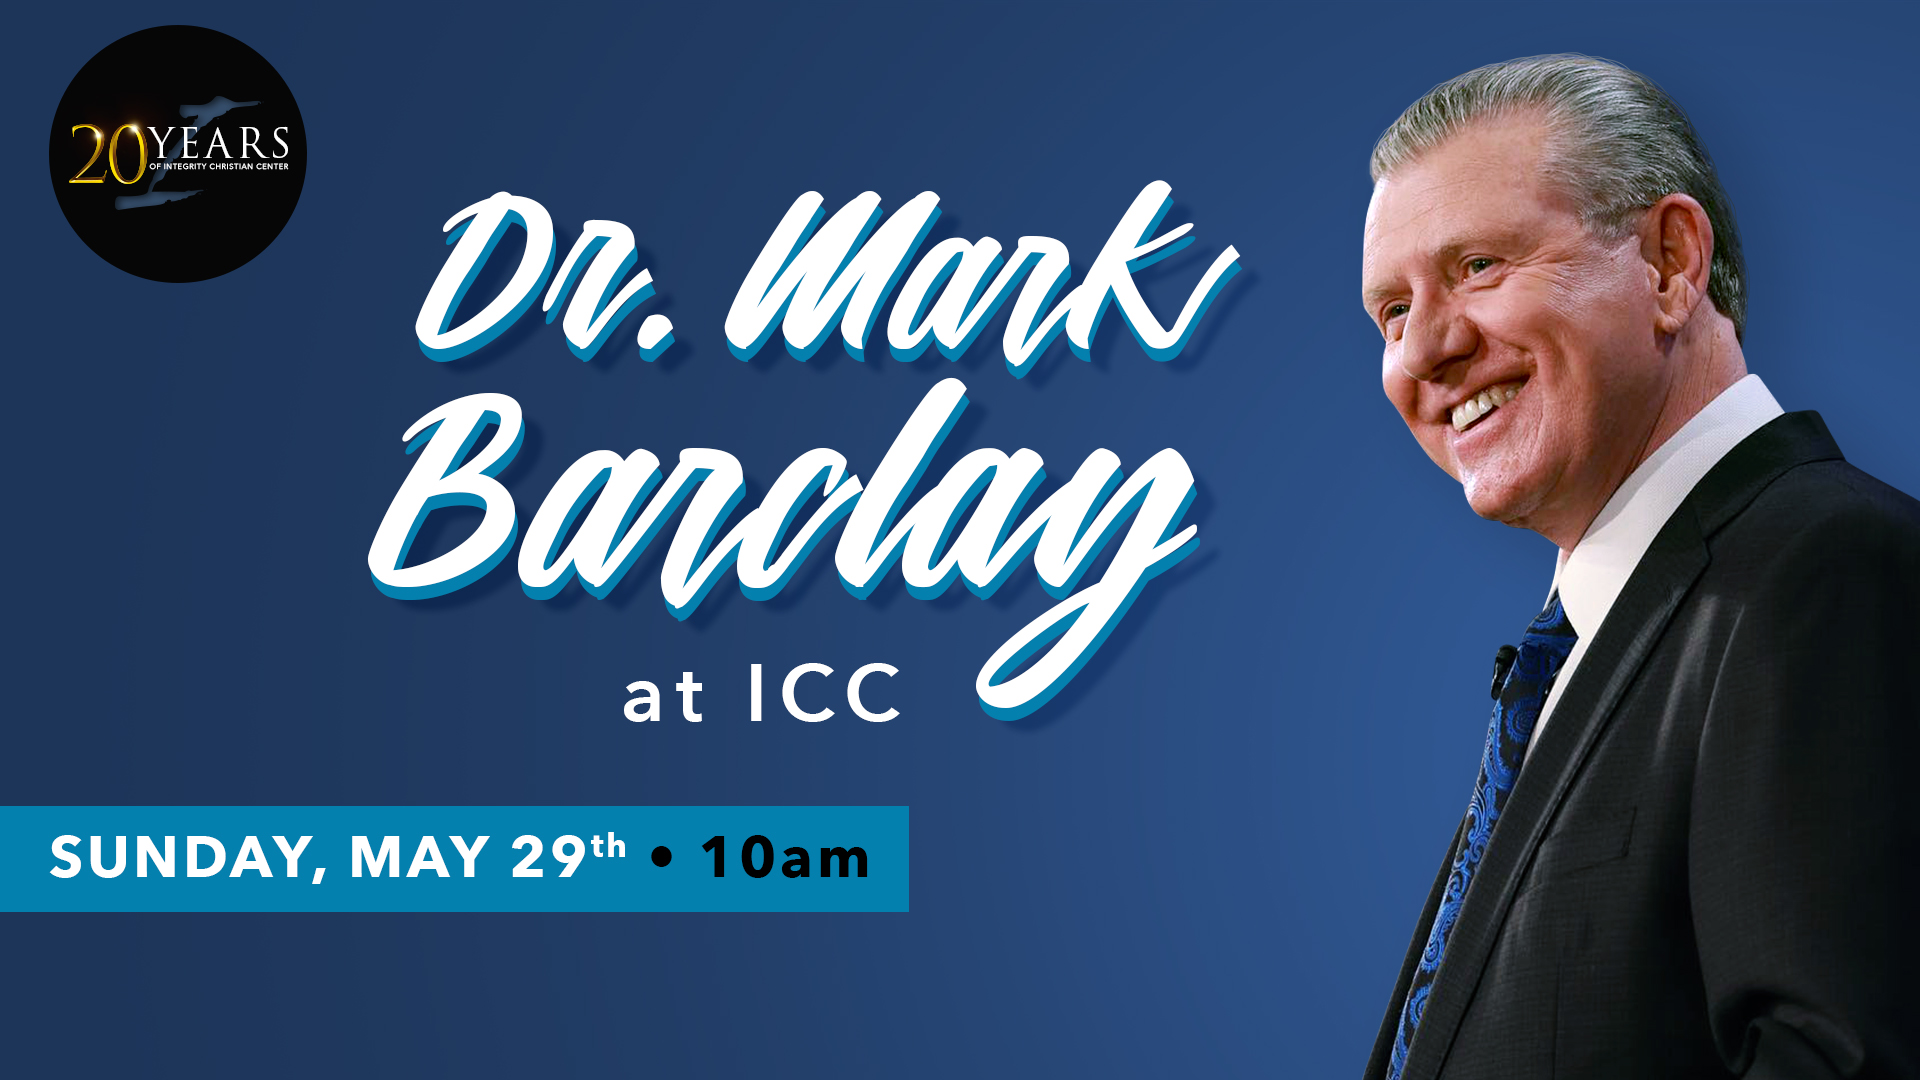 Dr. Mark Barclay